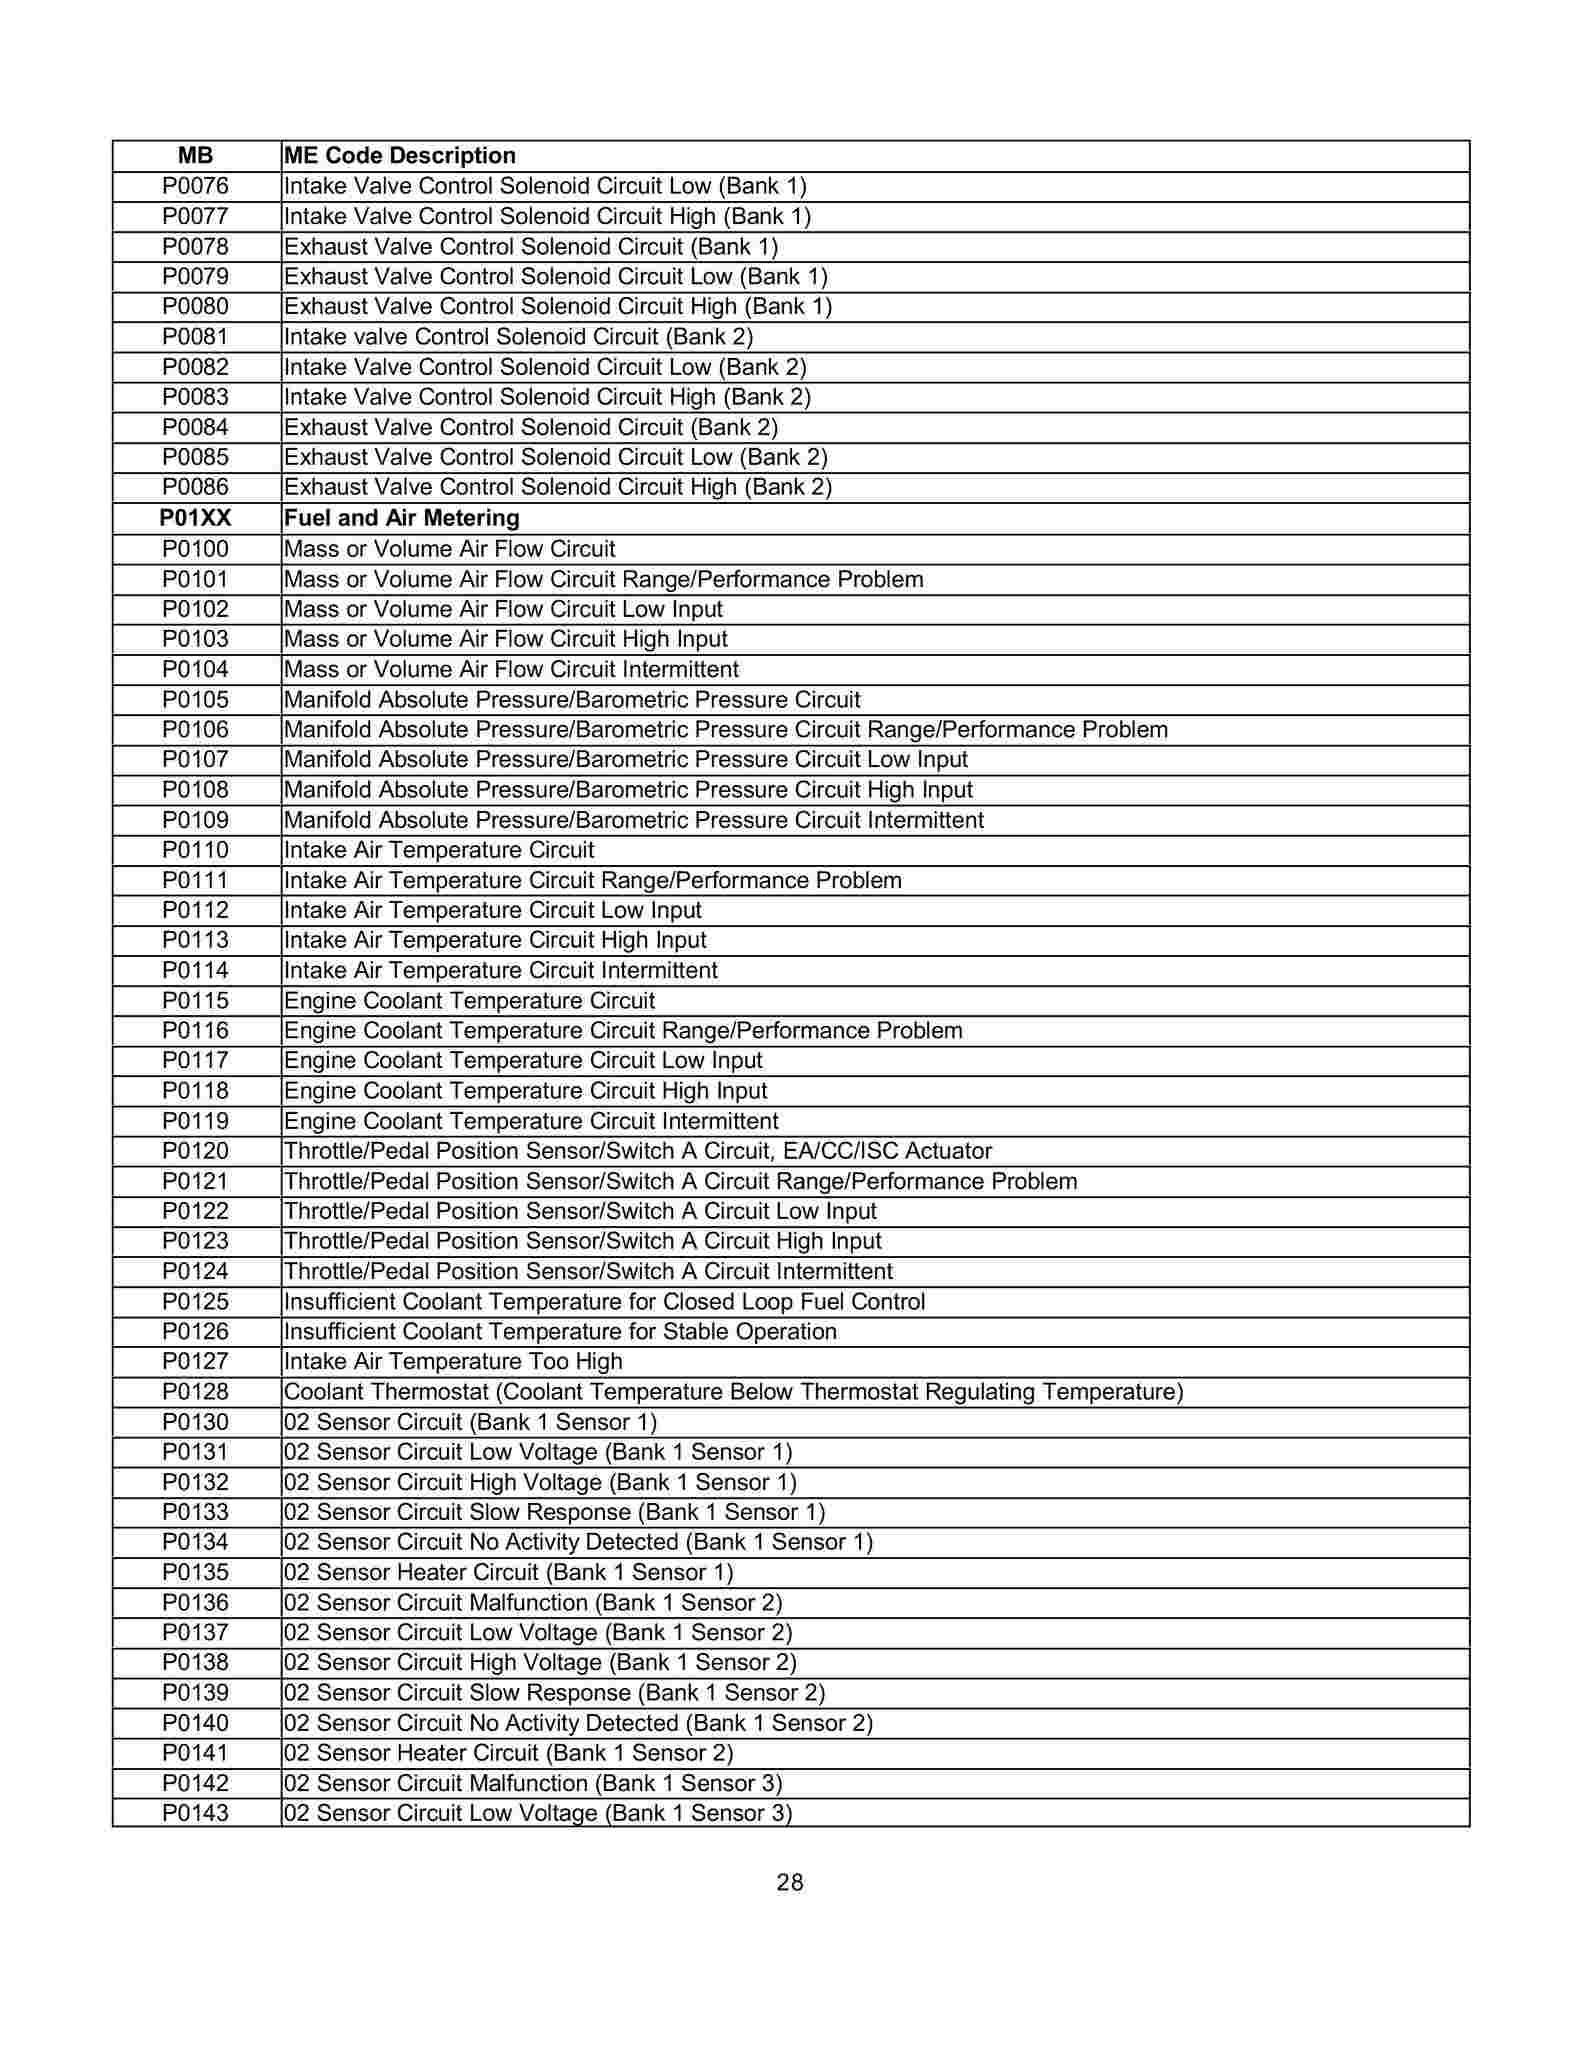 Lista de Códigos de falhas (fault codes) Mercedes-Benz 002812